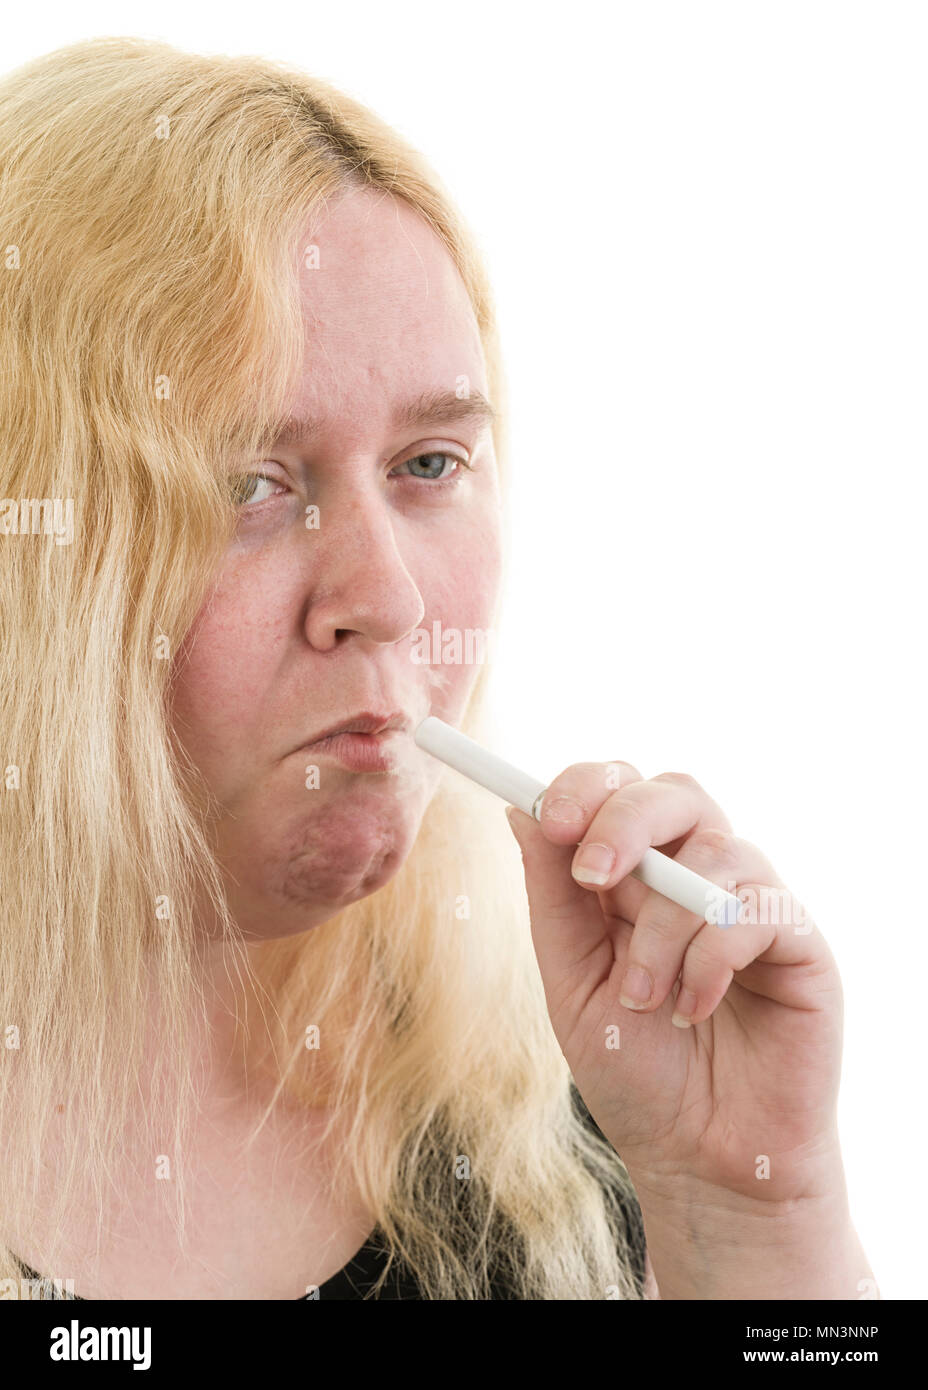 Junge kaukasier blond weiblich Frau mit Rauchen eine elektronische Zigarette auf weißem Hintergrund Model Release: Ja. Property Release: Nein. Stockfoto